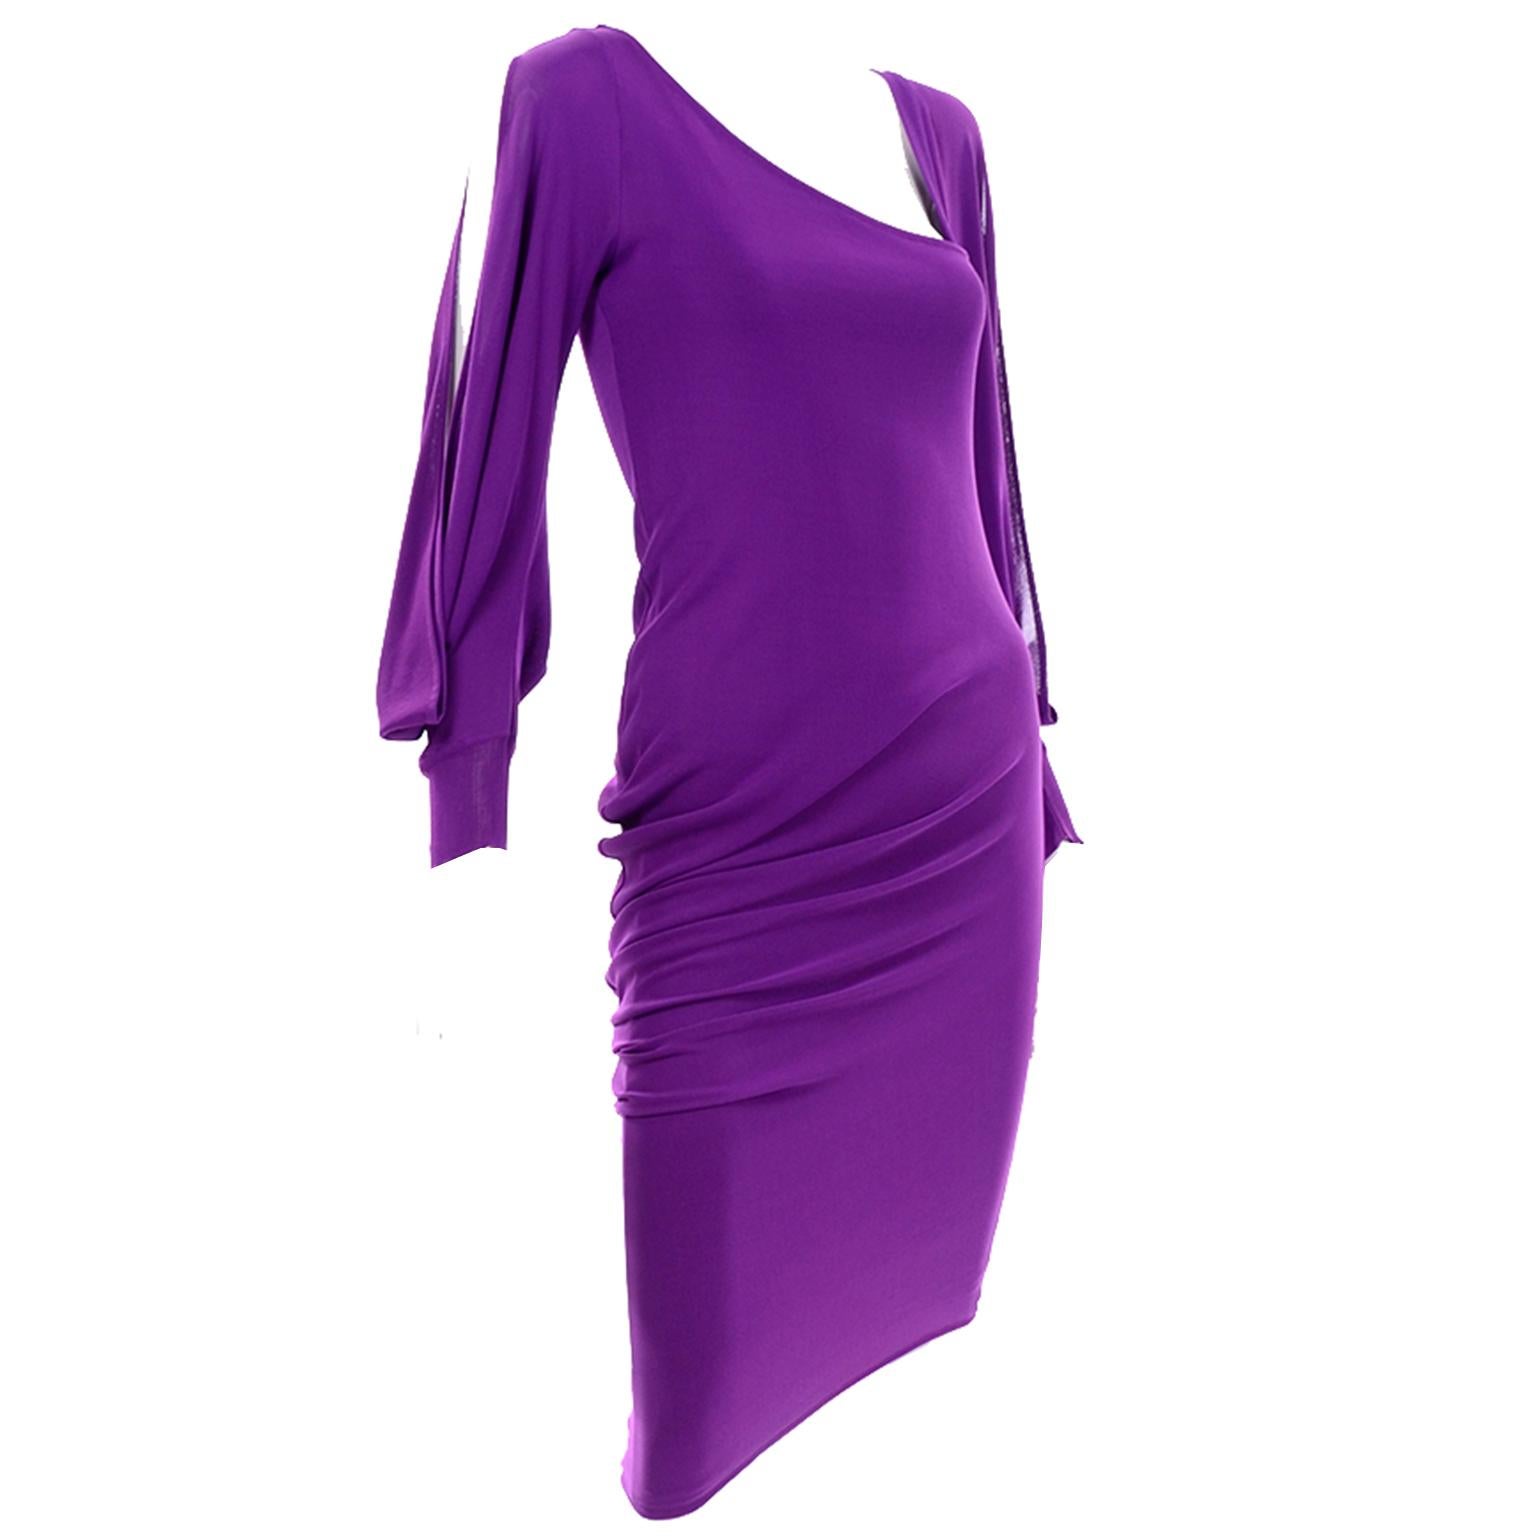 alexander mcqueen purple dress